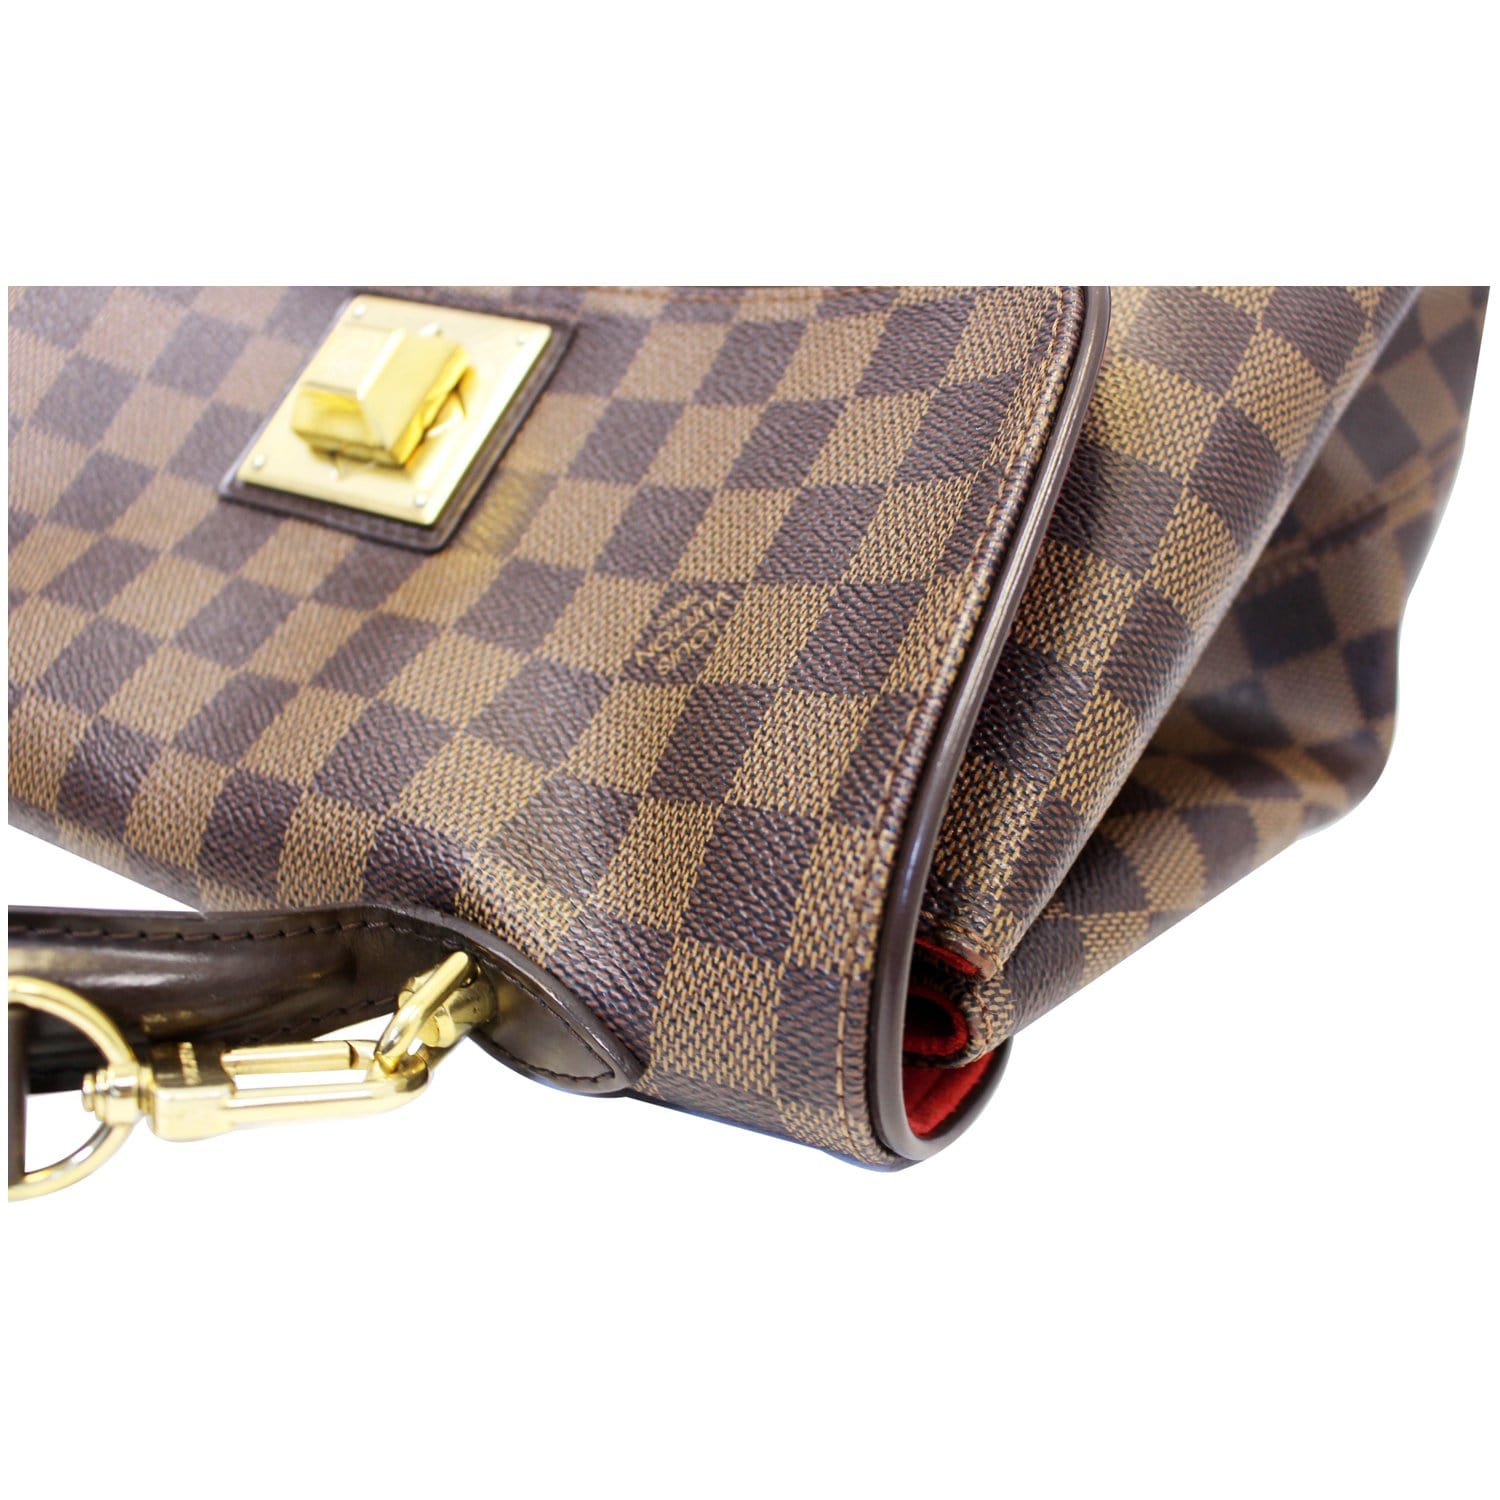 Louis Vuitton Damier Ebene Bergamo GM bag - ShopperBoard